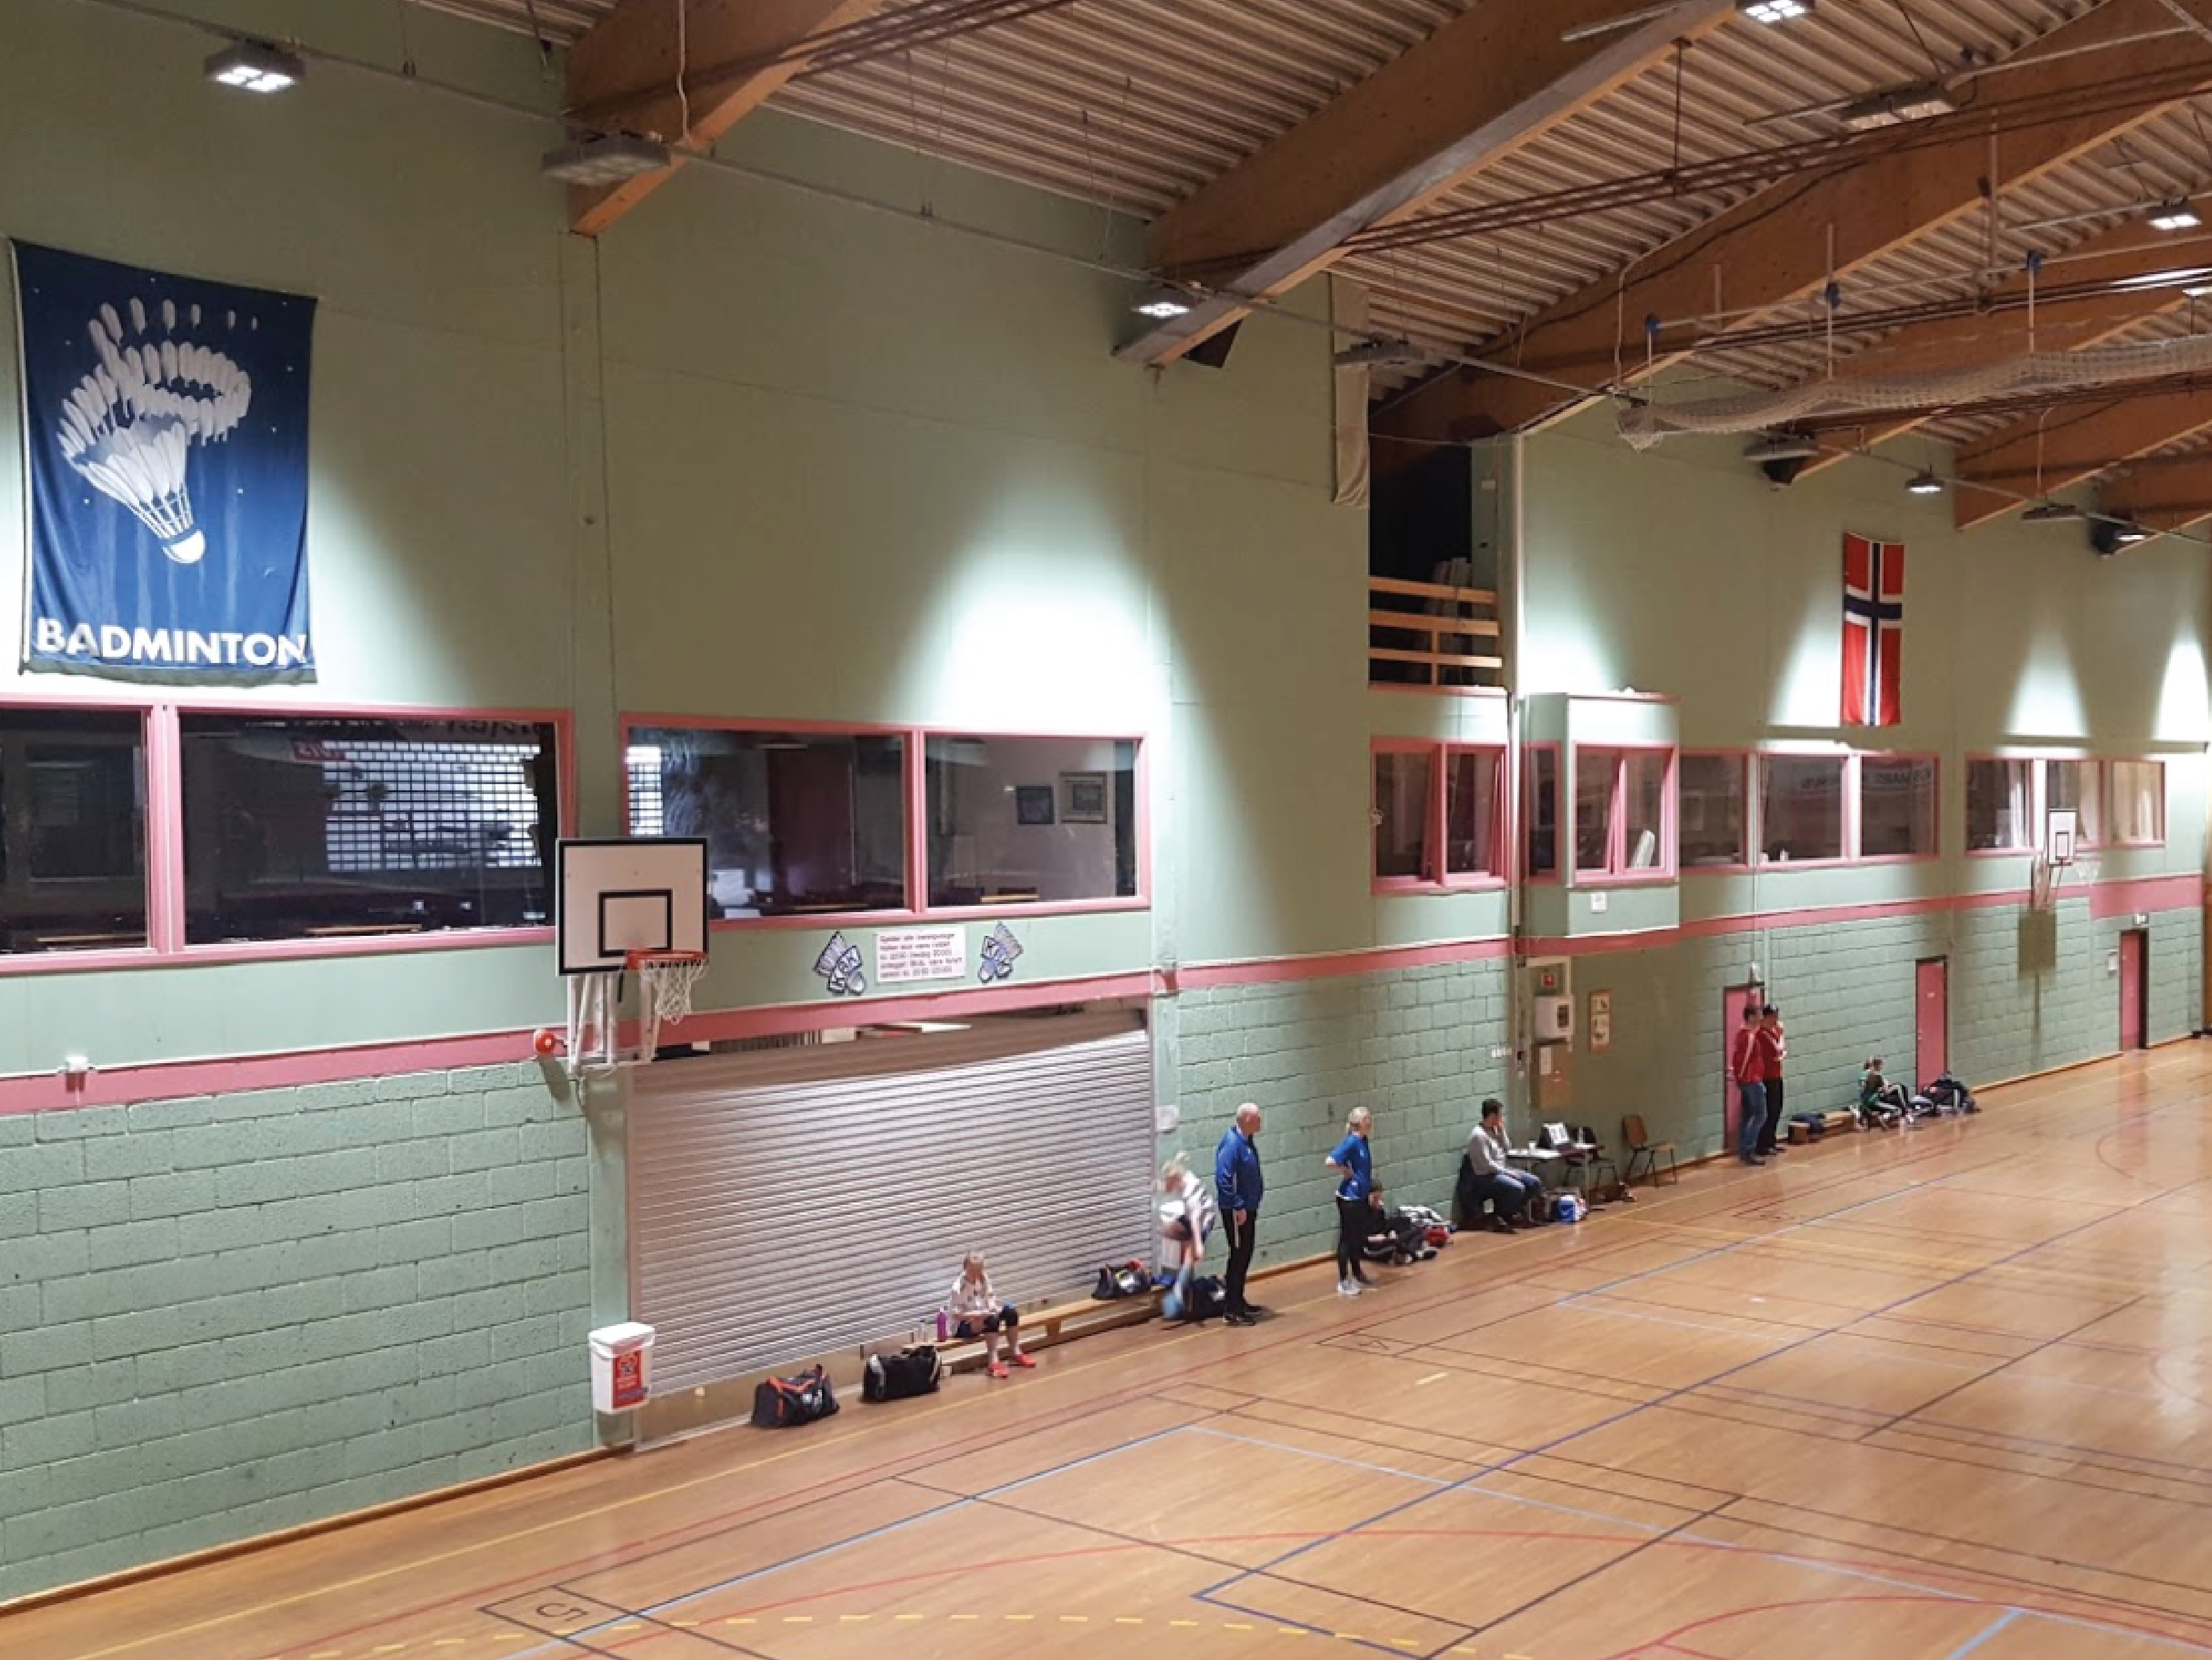 Grønne vegger er å foretrekke for badminton. Foto: Erik Vesterhus Rasmussen.